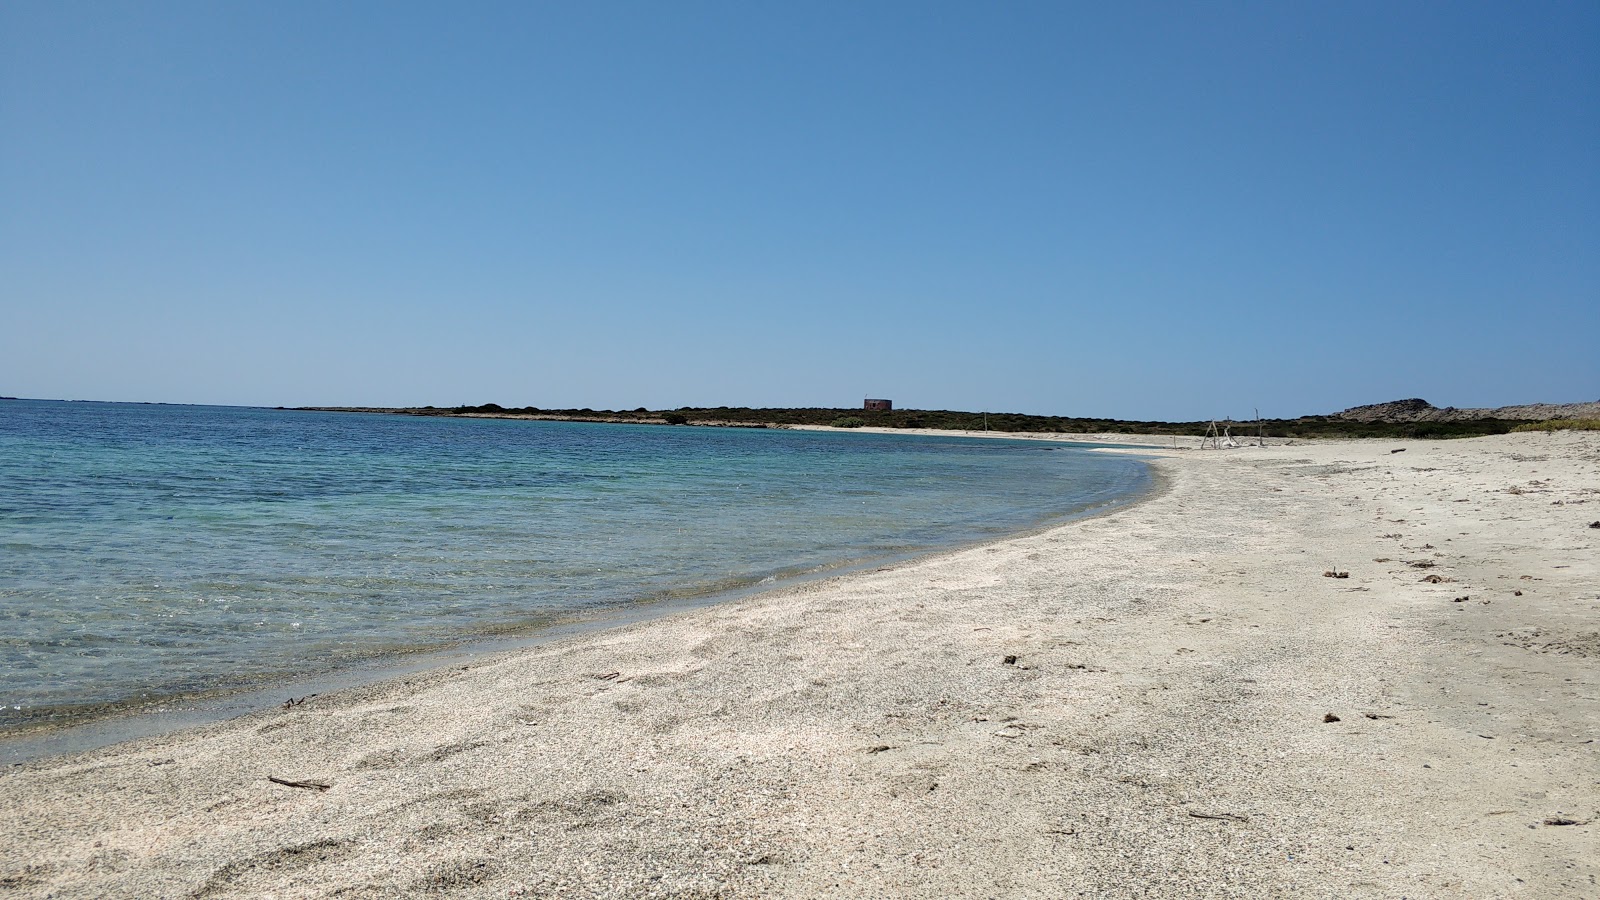 Spiaggia dello Spalmatore all'Asinara'in fotoğrafı hafif ince çakıl taş yüzey ile